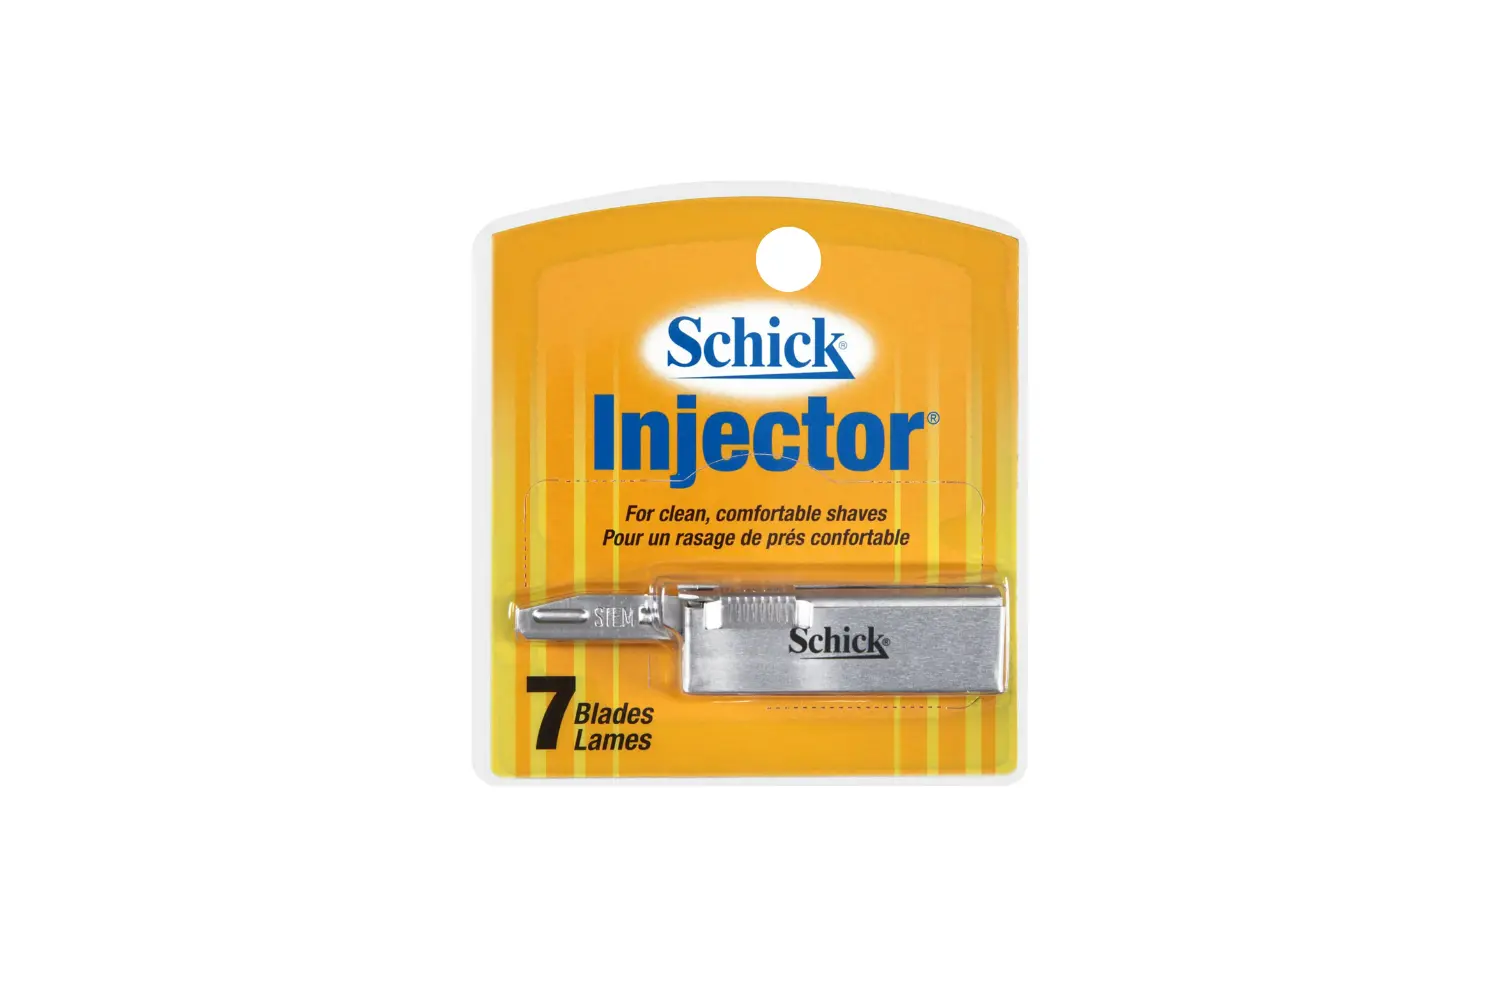 injector razor blade packaging